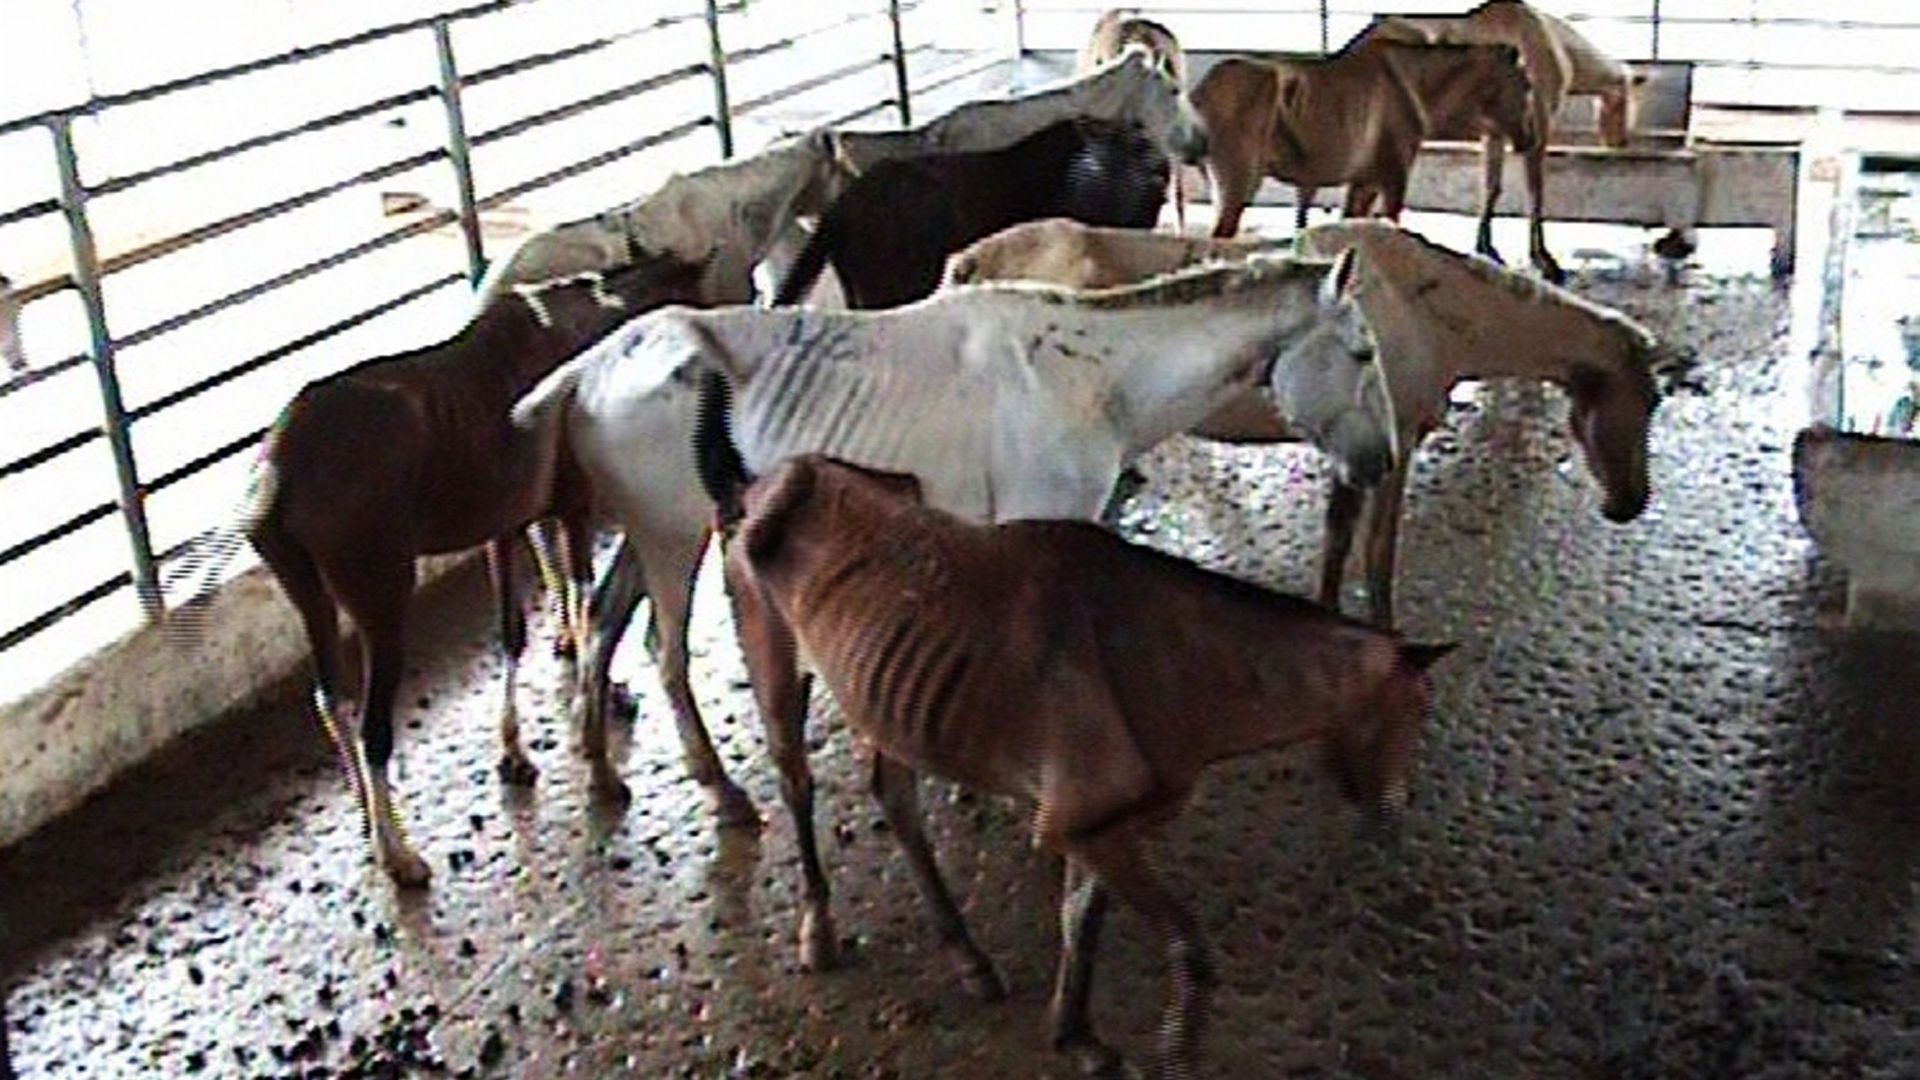 Des chevaux maltraités, gardés pour leur viande, debout à l'extérieur à Bruxelles, le 8 avril 2010. Gaia veut interdire toute viande de cheval en provenance d'Amérique du Sud, dans les magasins en Belgique.